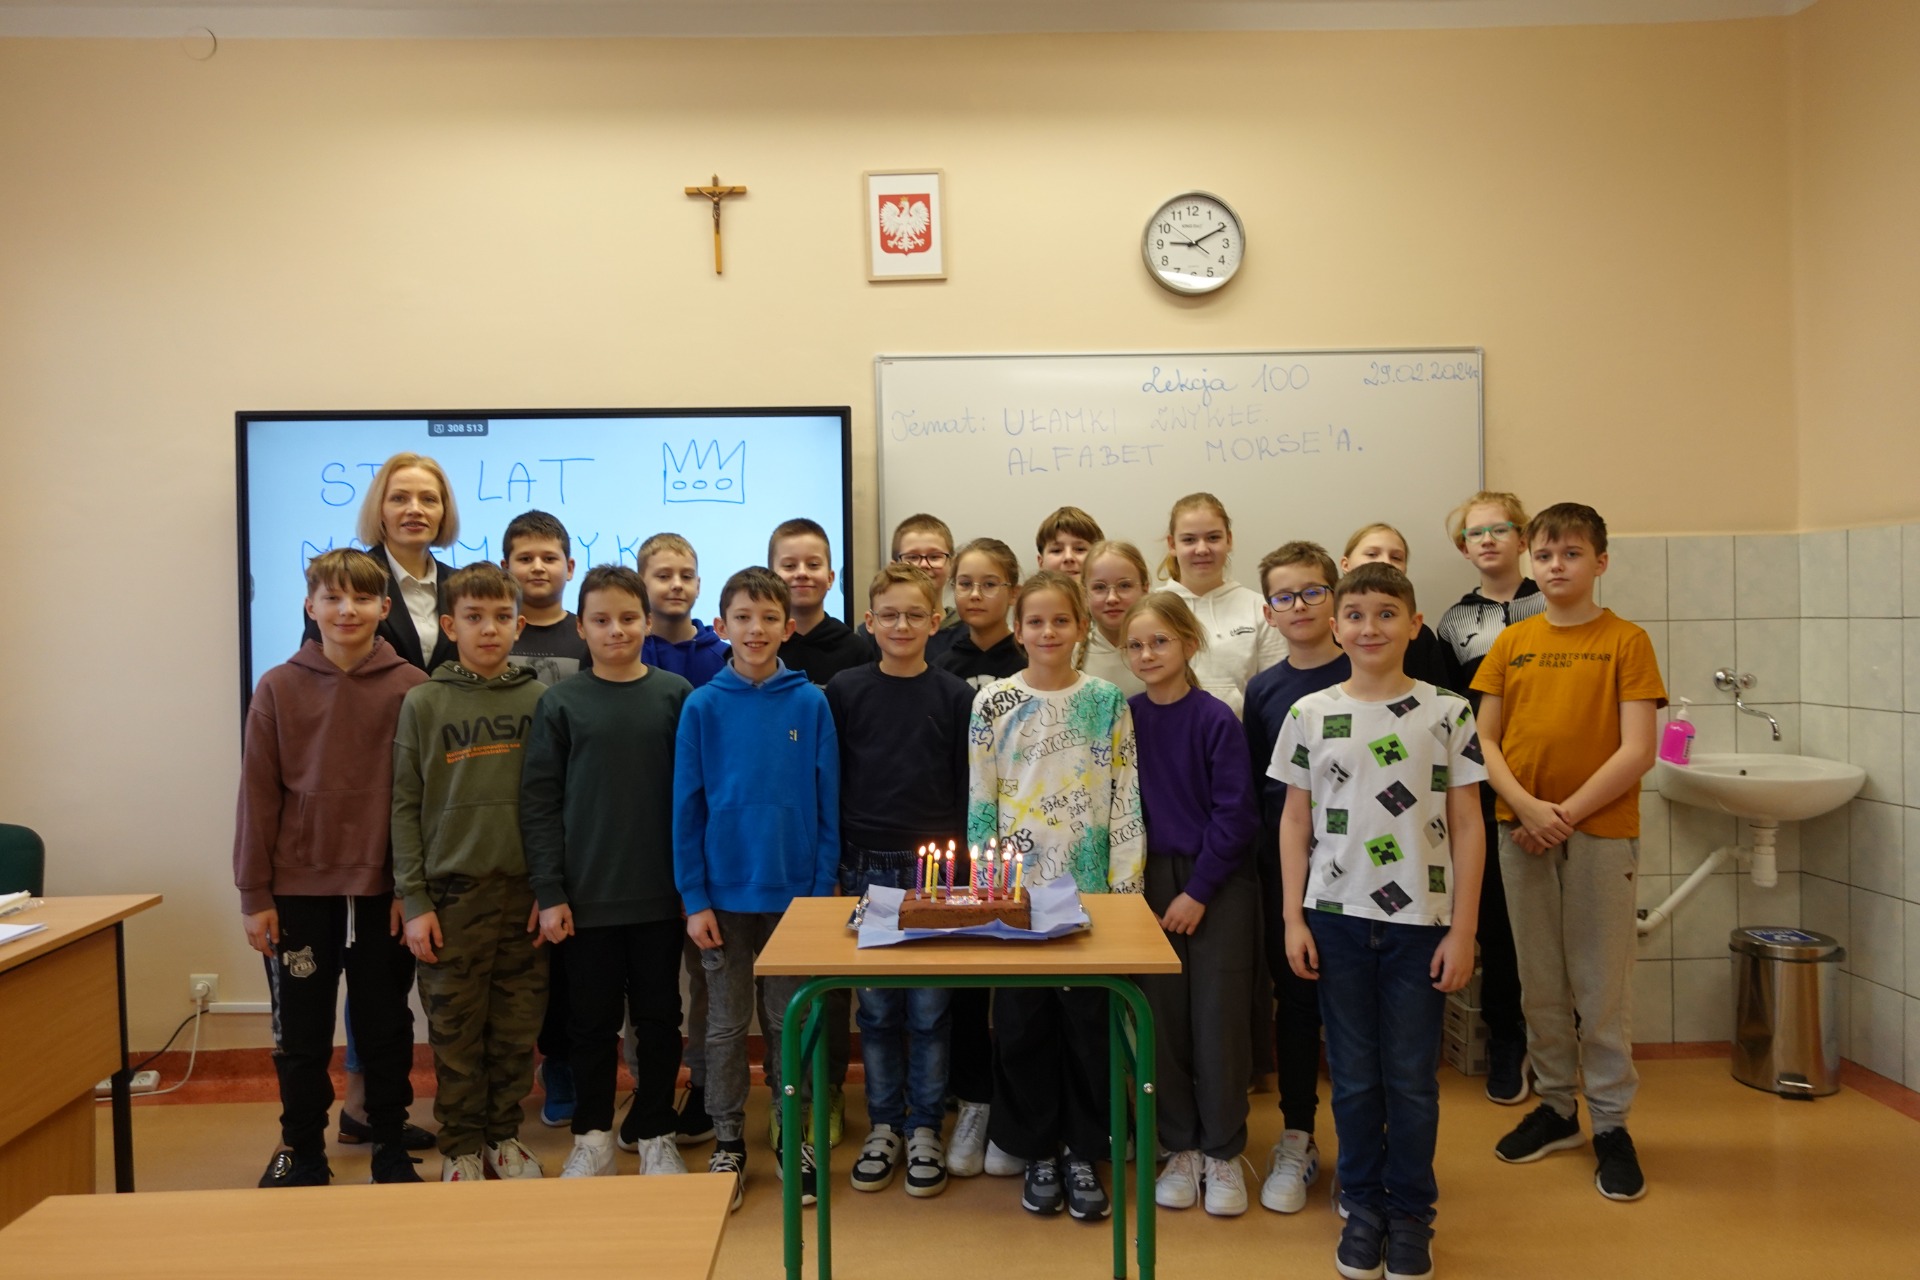 Uczniowei klasy 4a Szkoły Podstawowej Nr 2 im. Mikołaja Kopernika w Olecku świętują 100. lekcję matematyki 